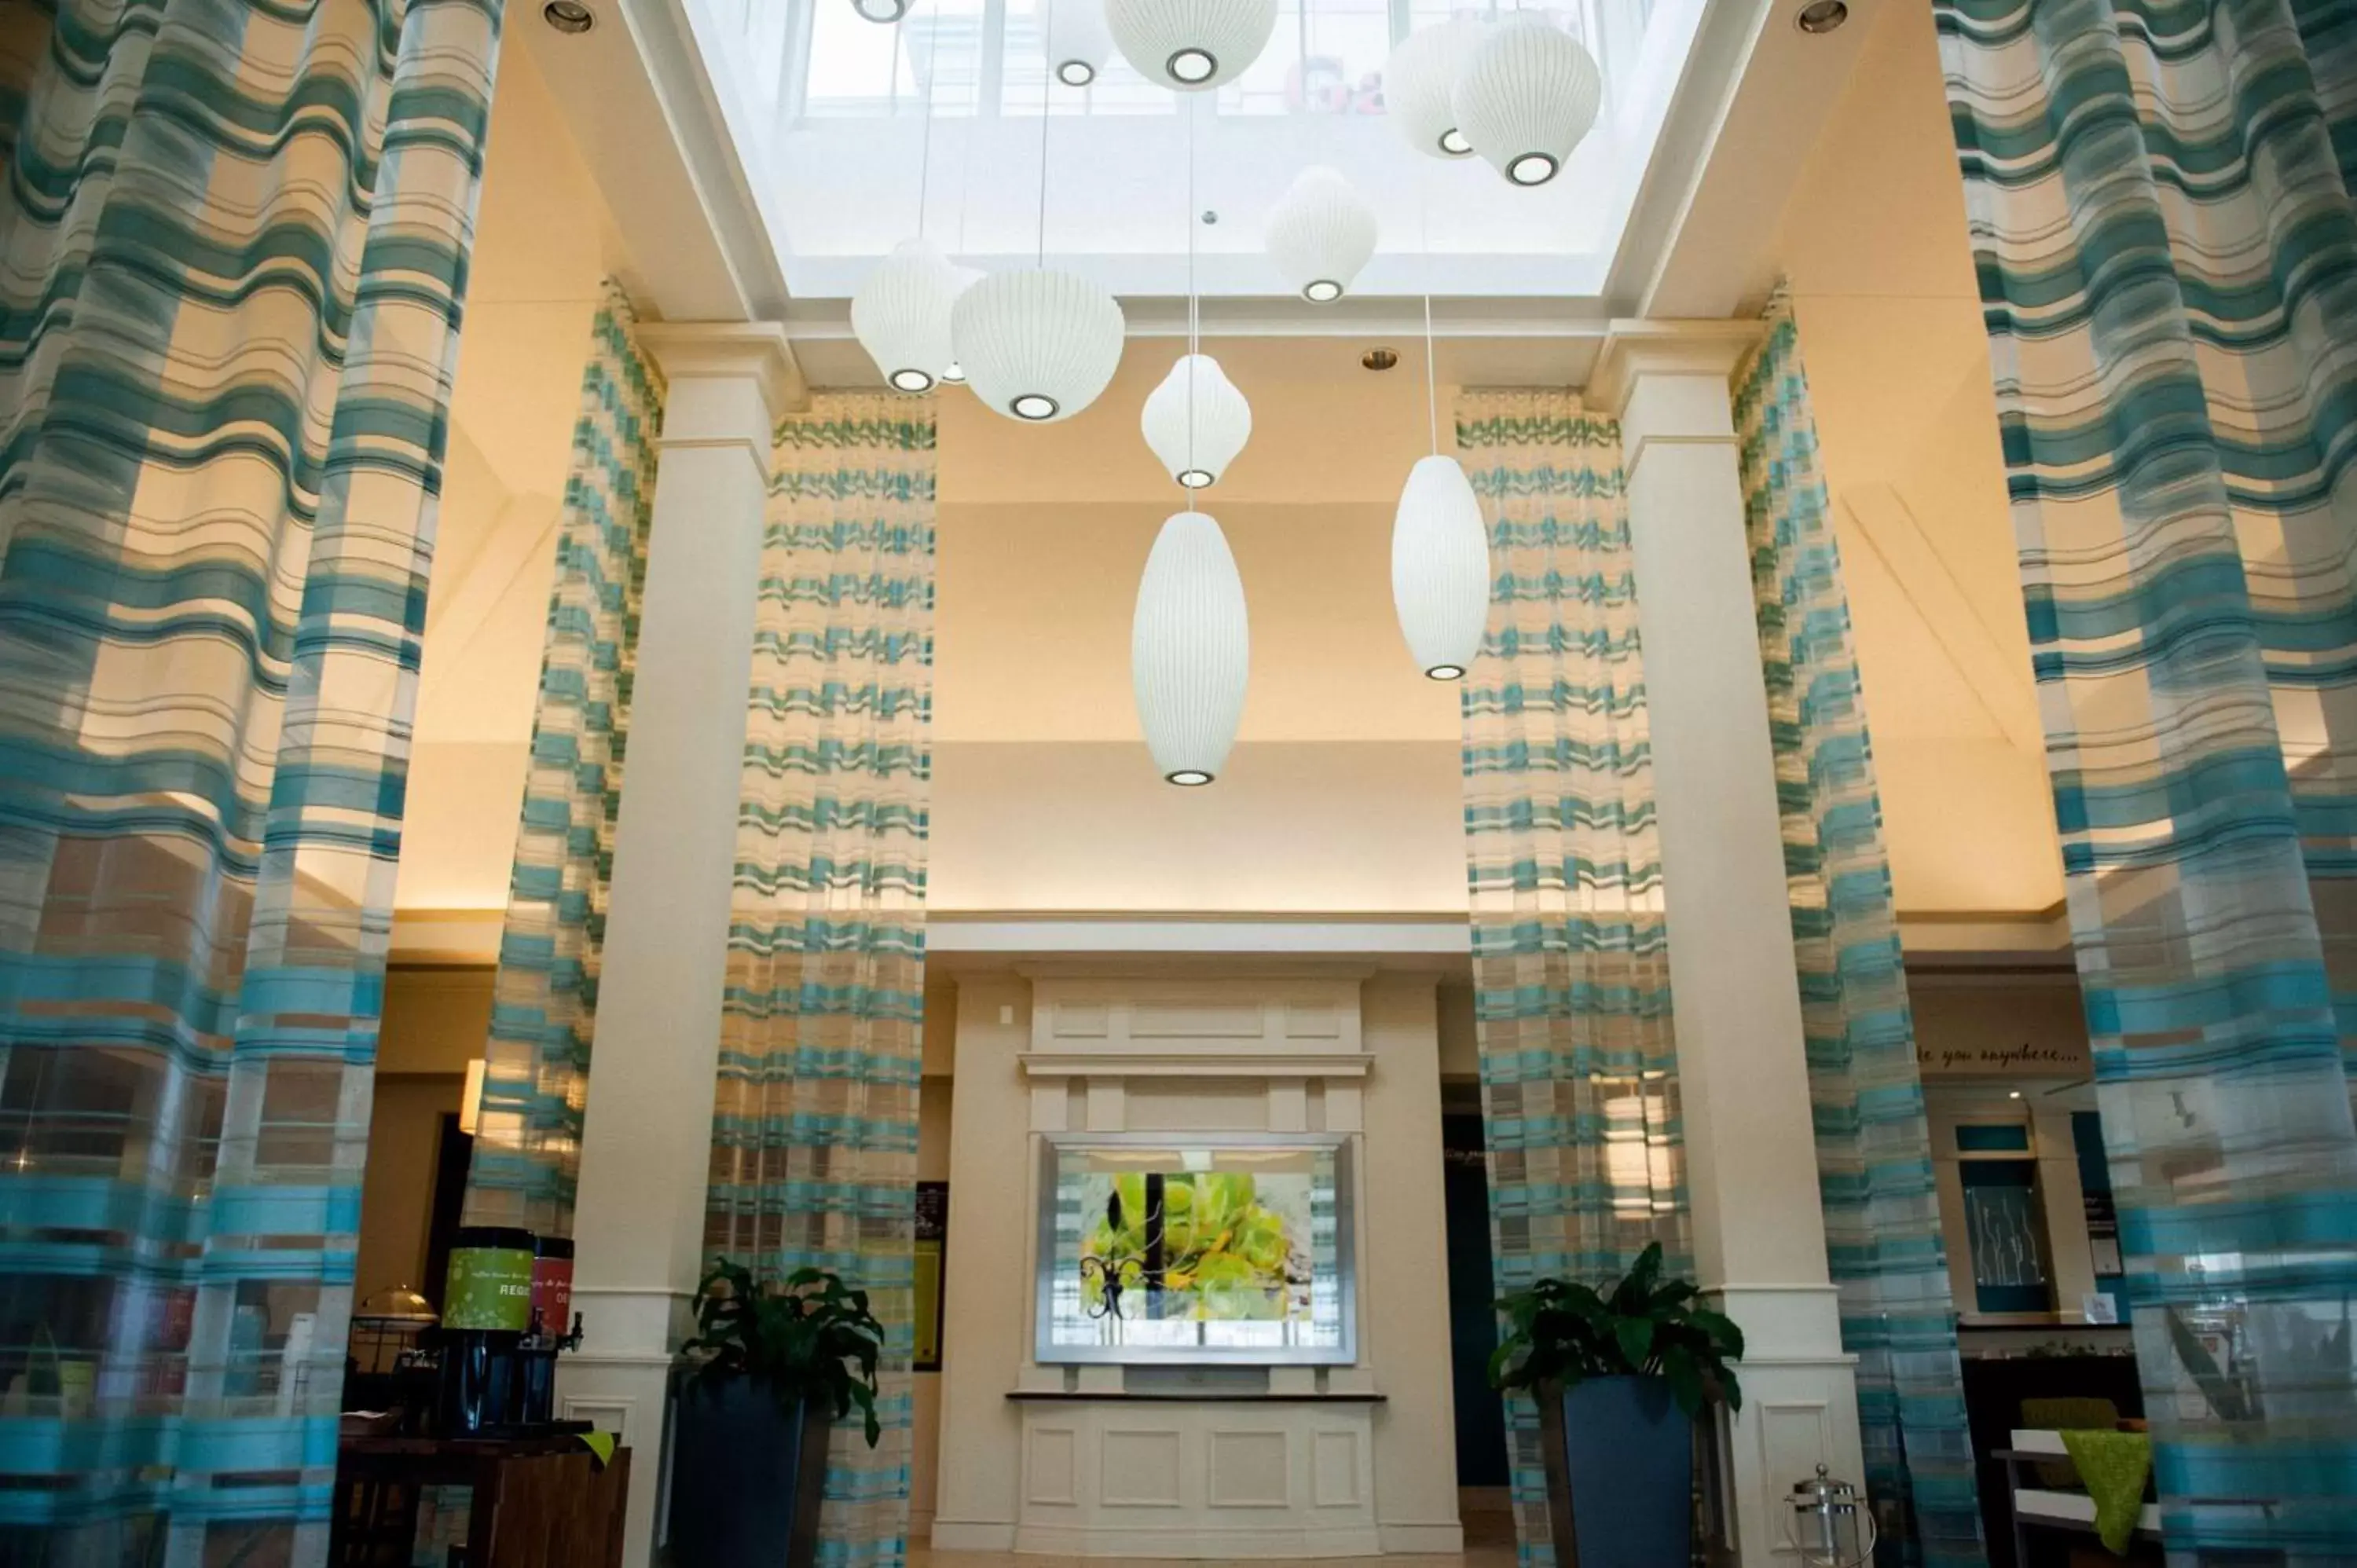 Lobby or reception, Lobby/Reception in Hilton Garden Inn Rockaway